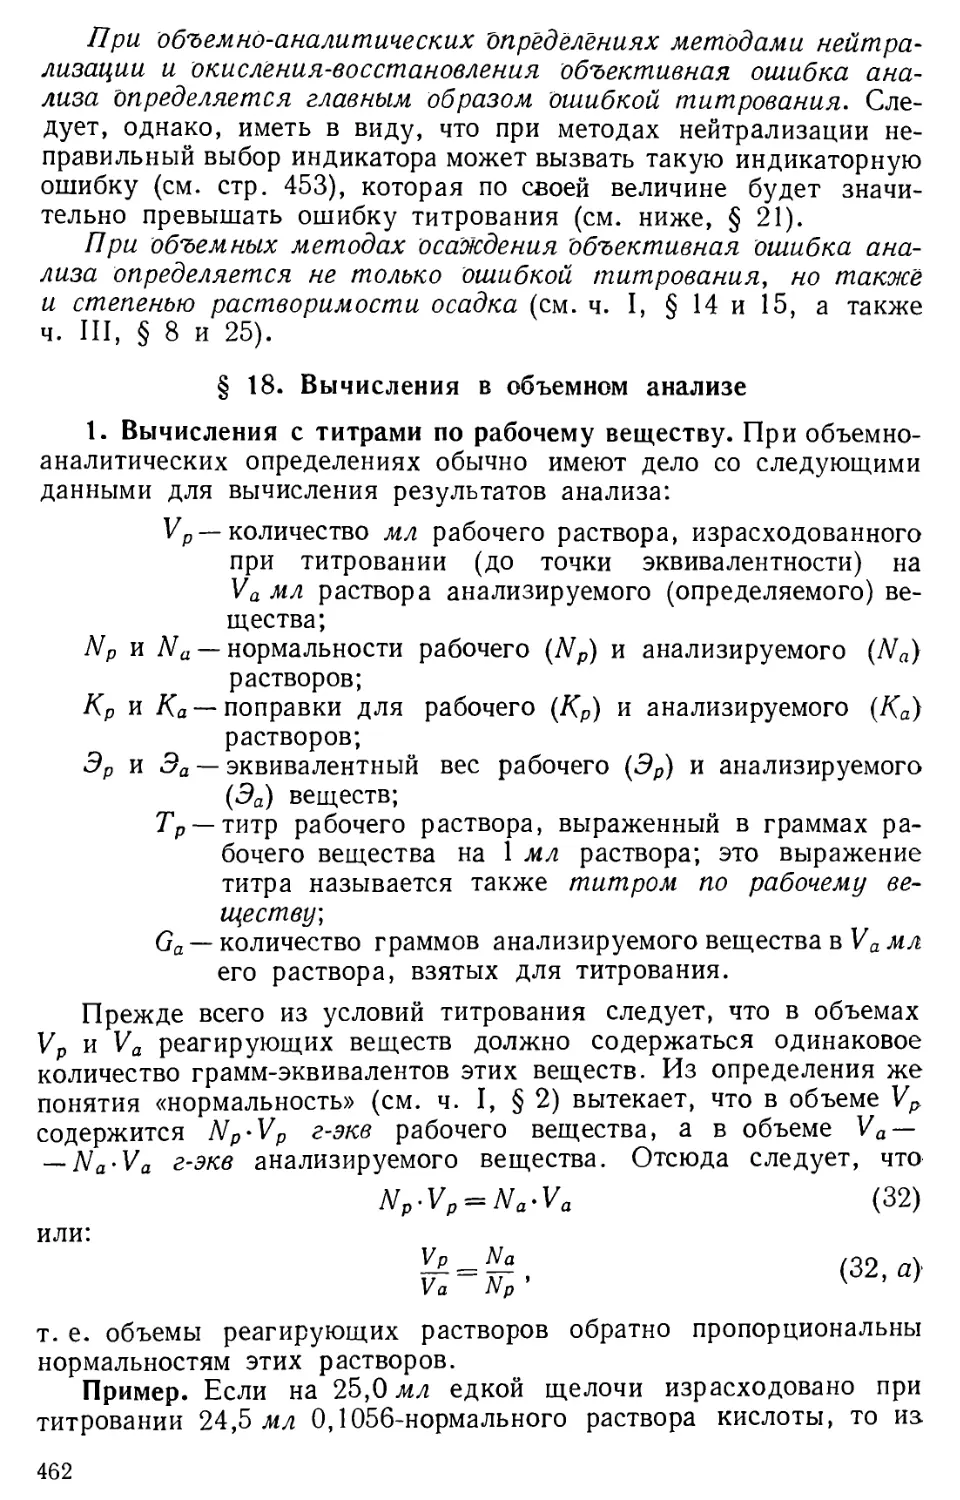 § 18. Вычисления в объемном анализе